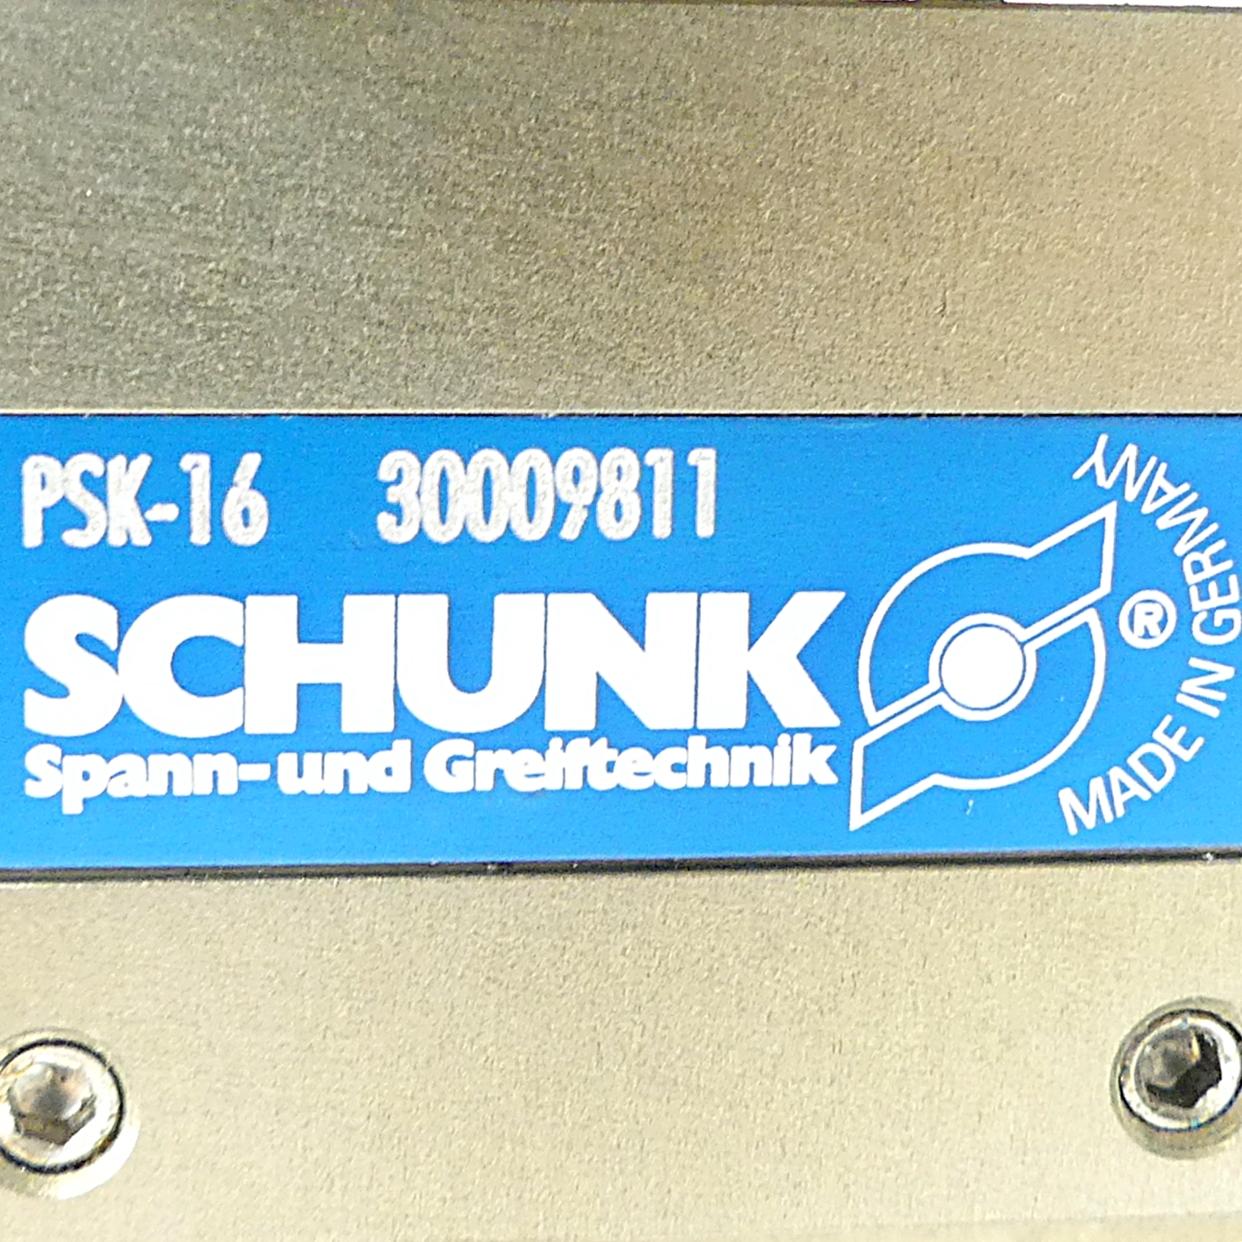 Produktfoto 2 von SCHUNK Kompakt-Schwenkkopf PSK-16